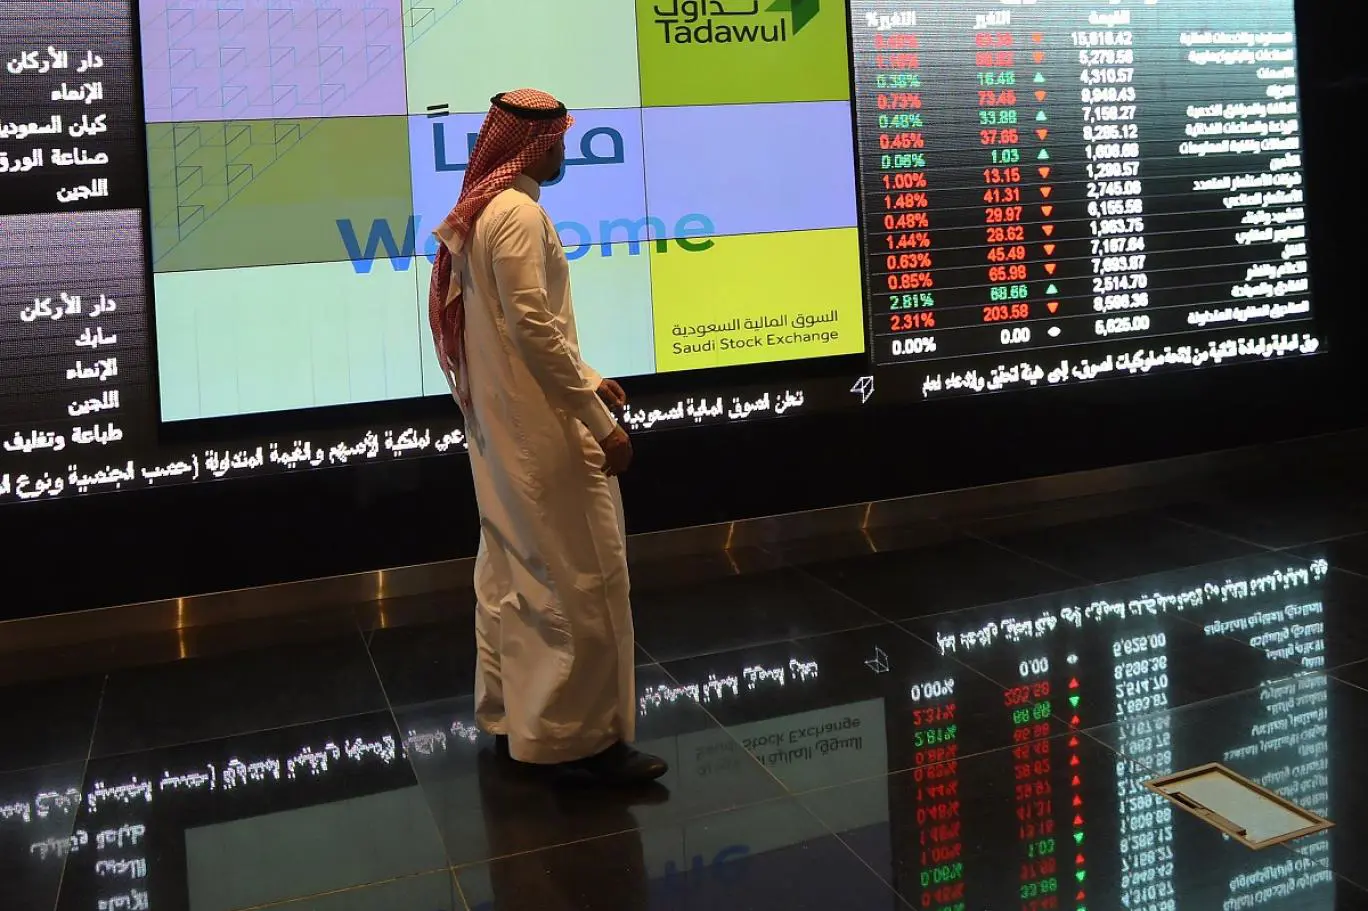 سوق الأسهم السعودية تخسر أكثر من 40 مليار دولار في أسبوع